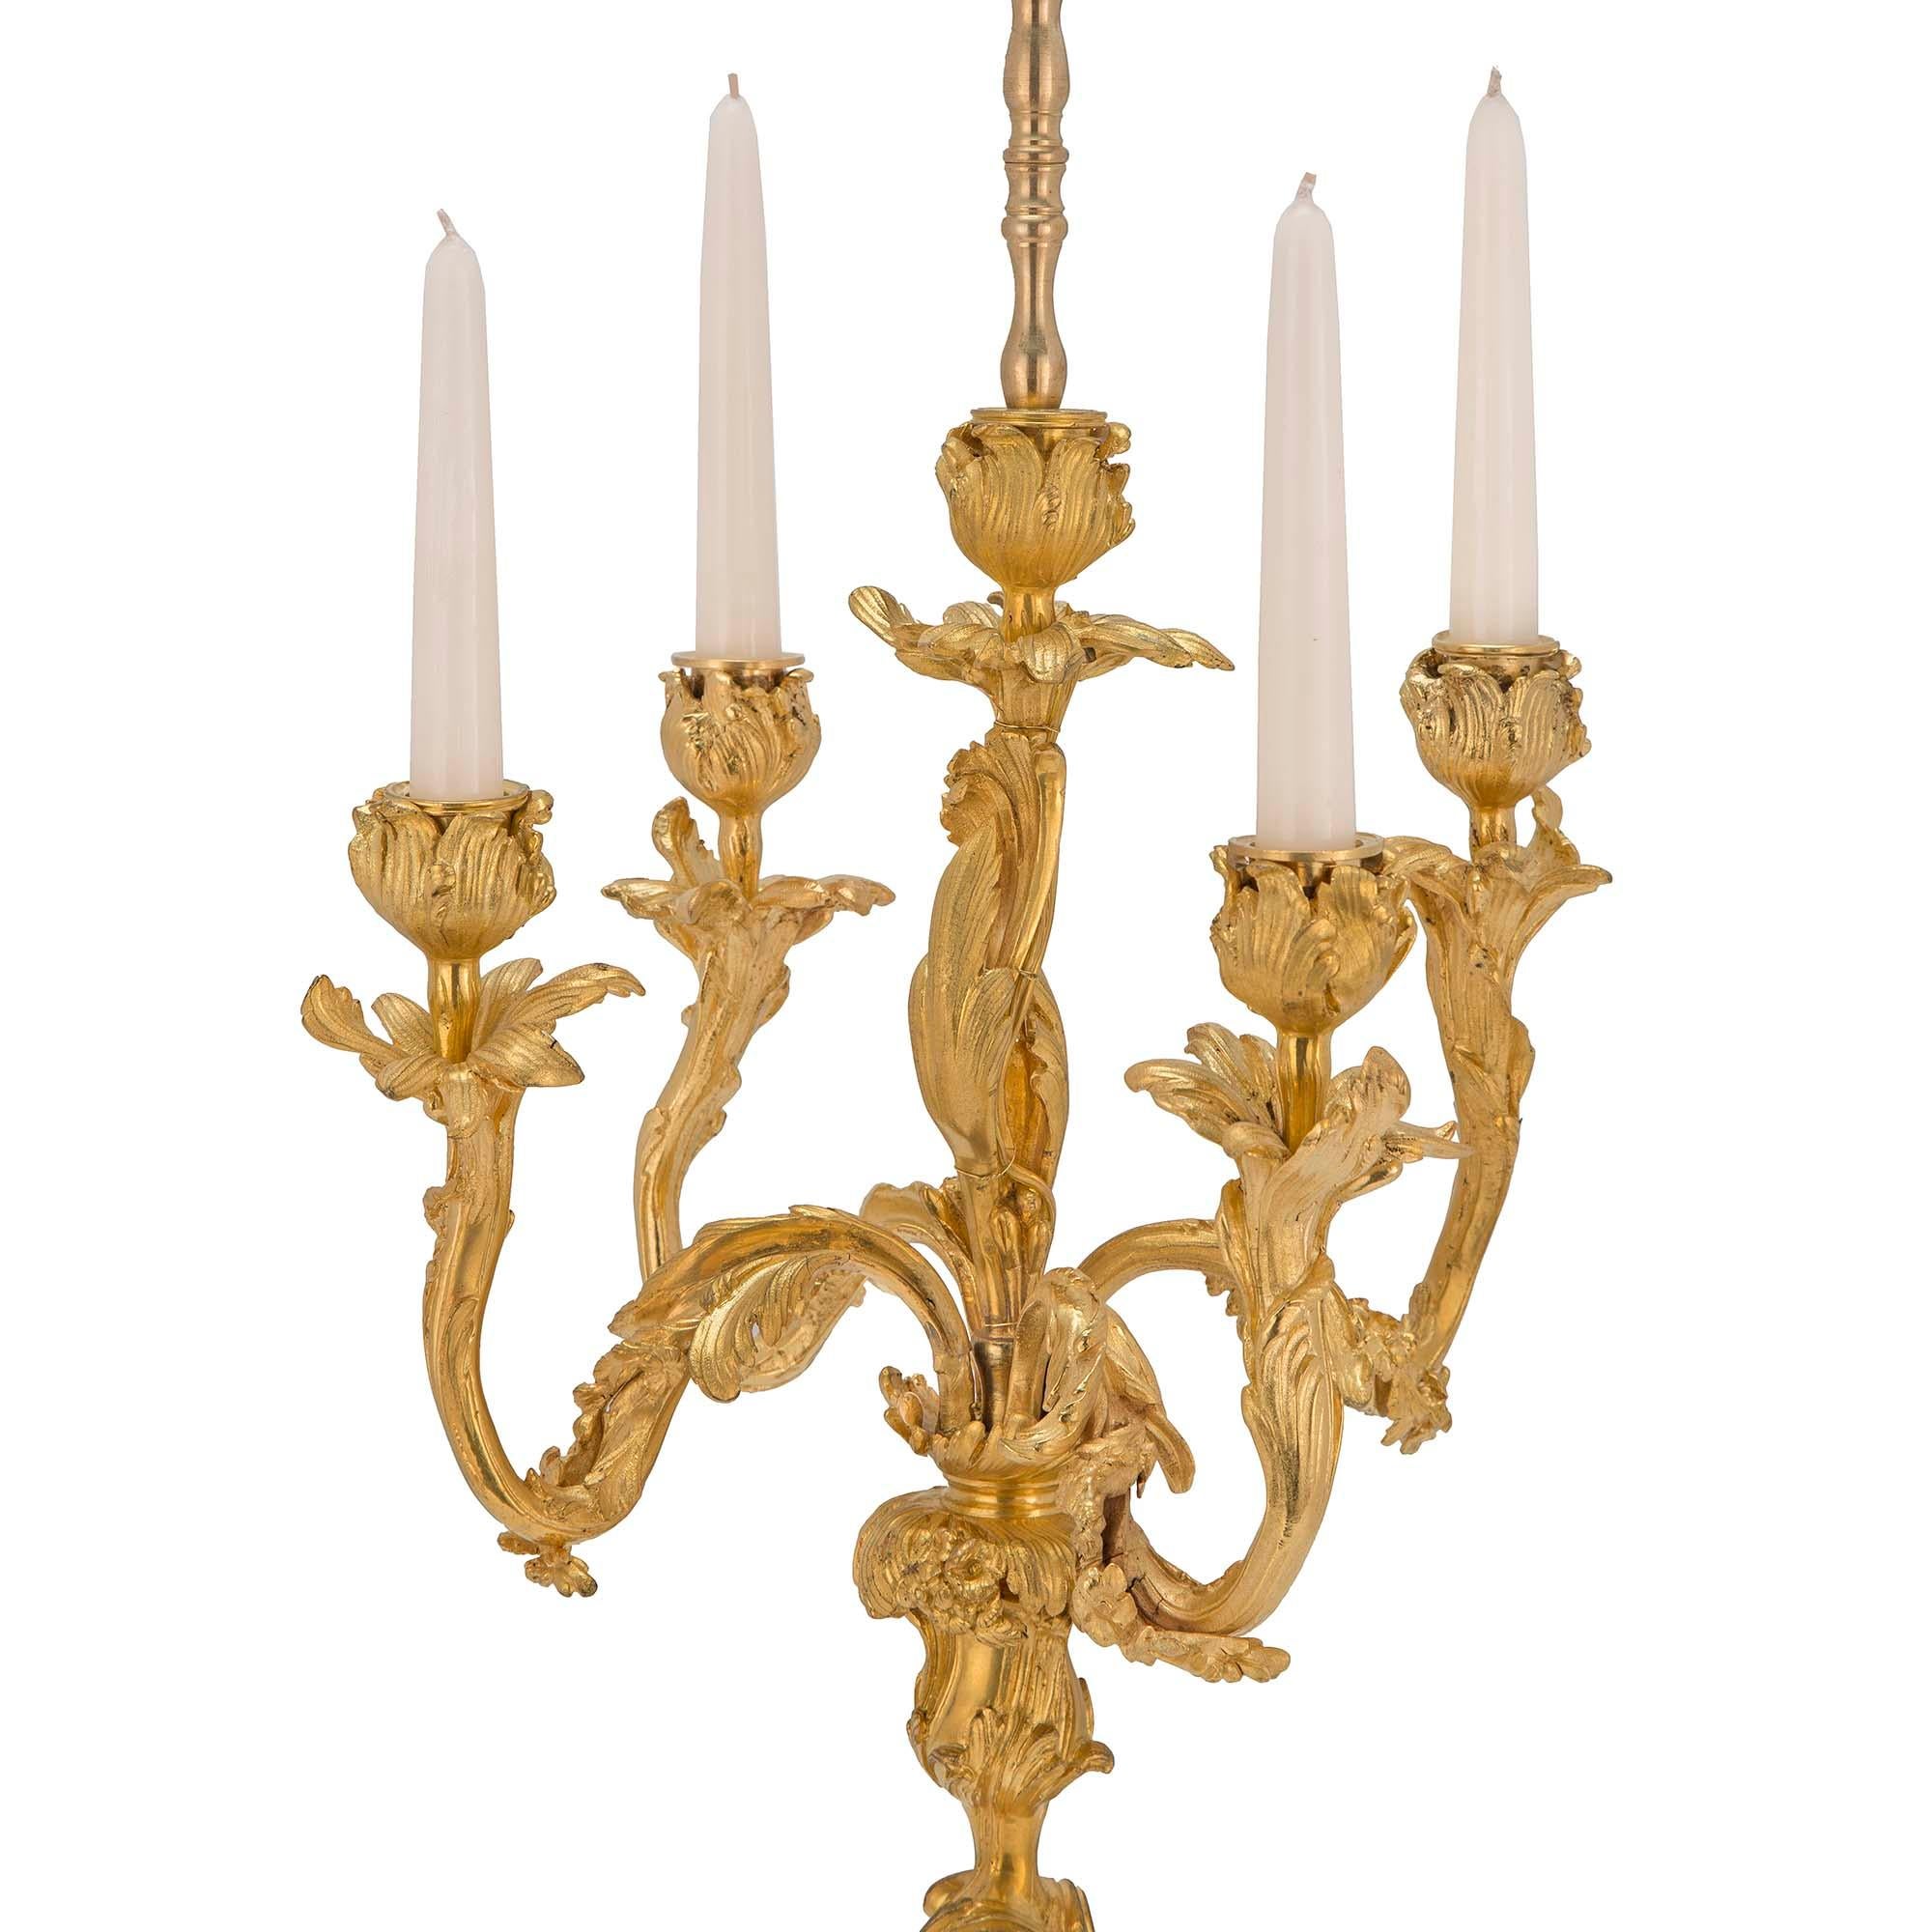 Une belle paire de lampes candélabres françaises du 19ème siècle en st. Louis XV et bronze doré. Chaque lampe repose sur des pieds latéraux rectangulaires concaves, sous la base circulaire. La base est accentuée par des feuilles d'acanthe en volutes